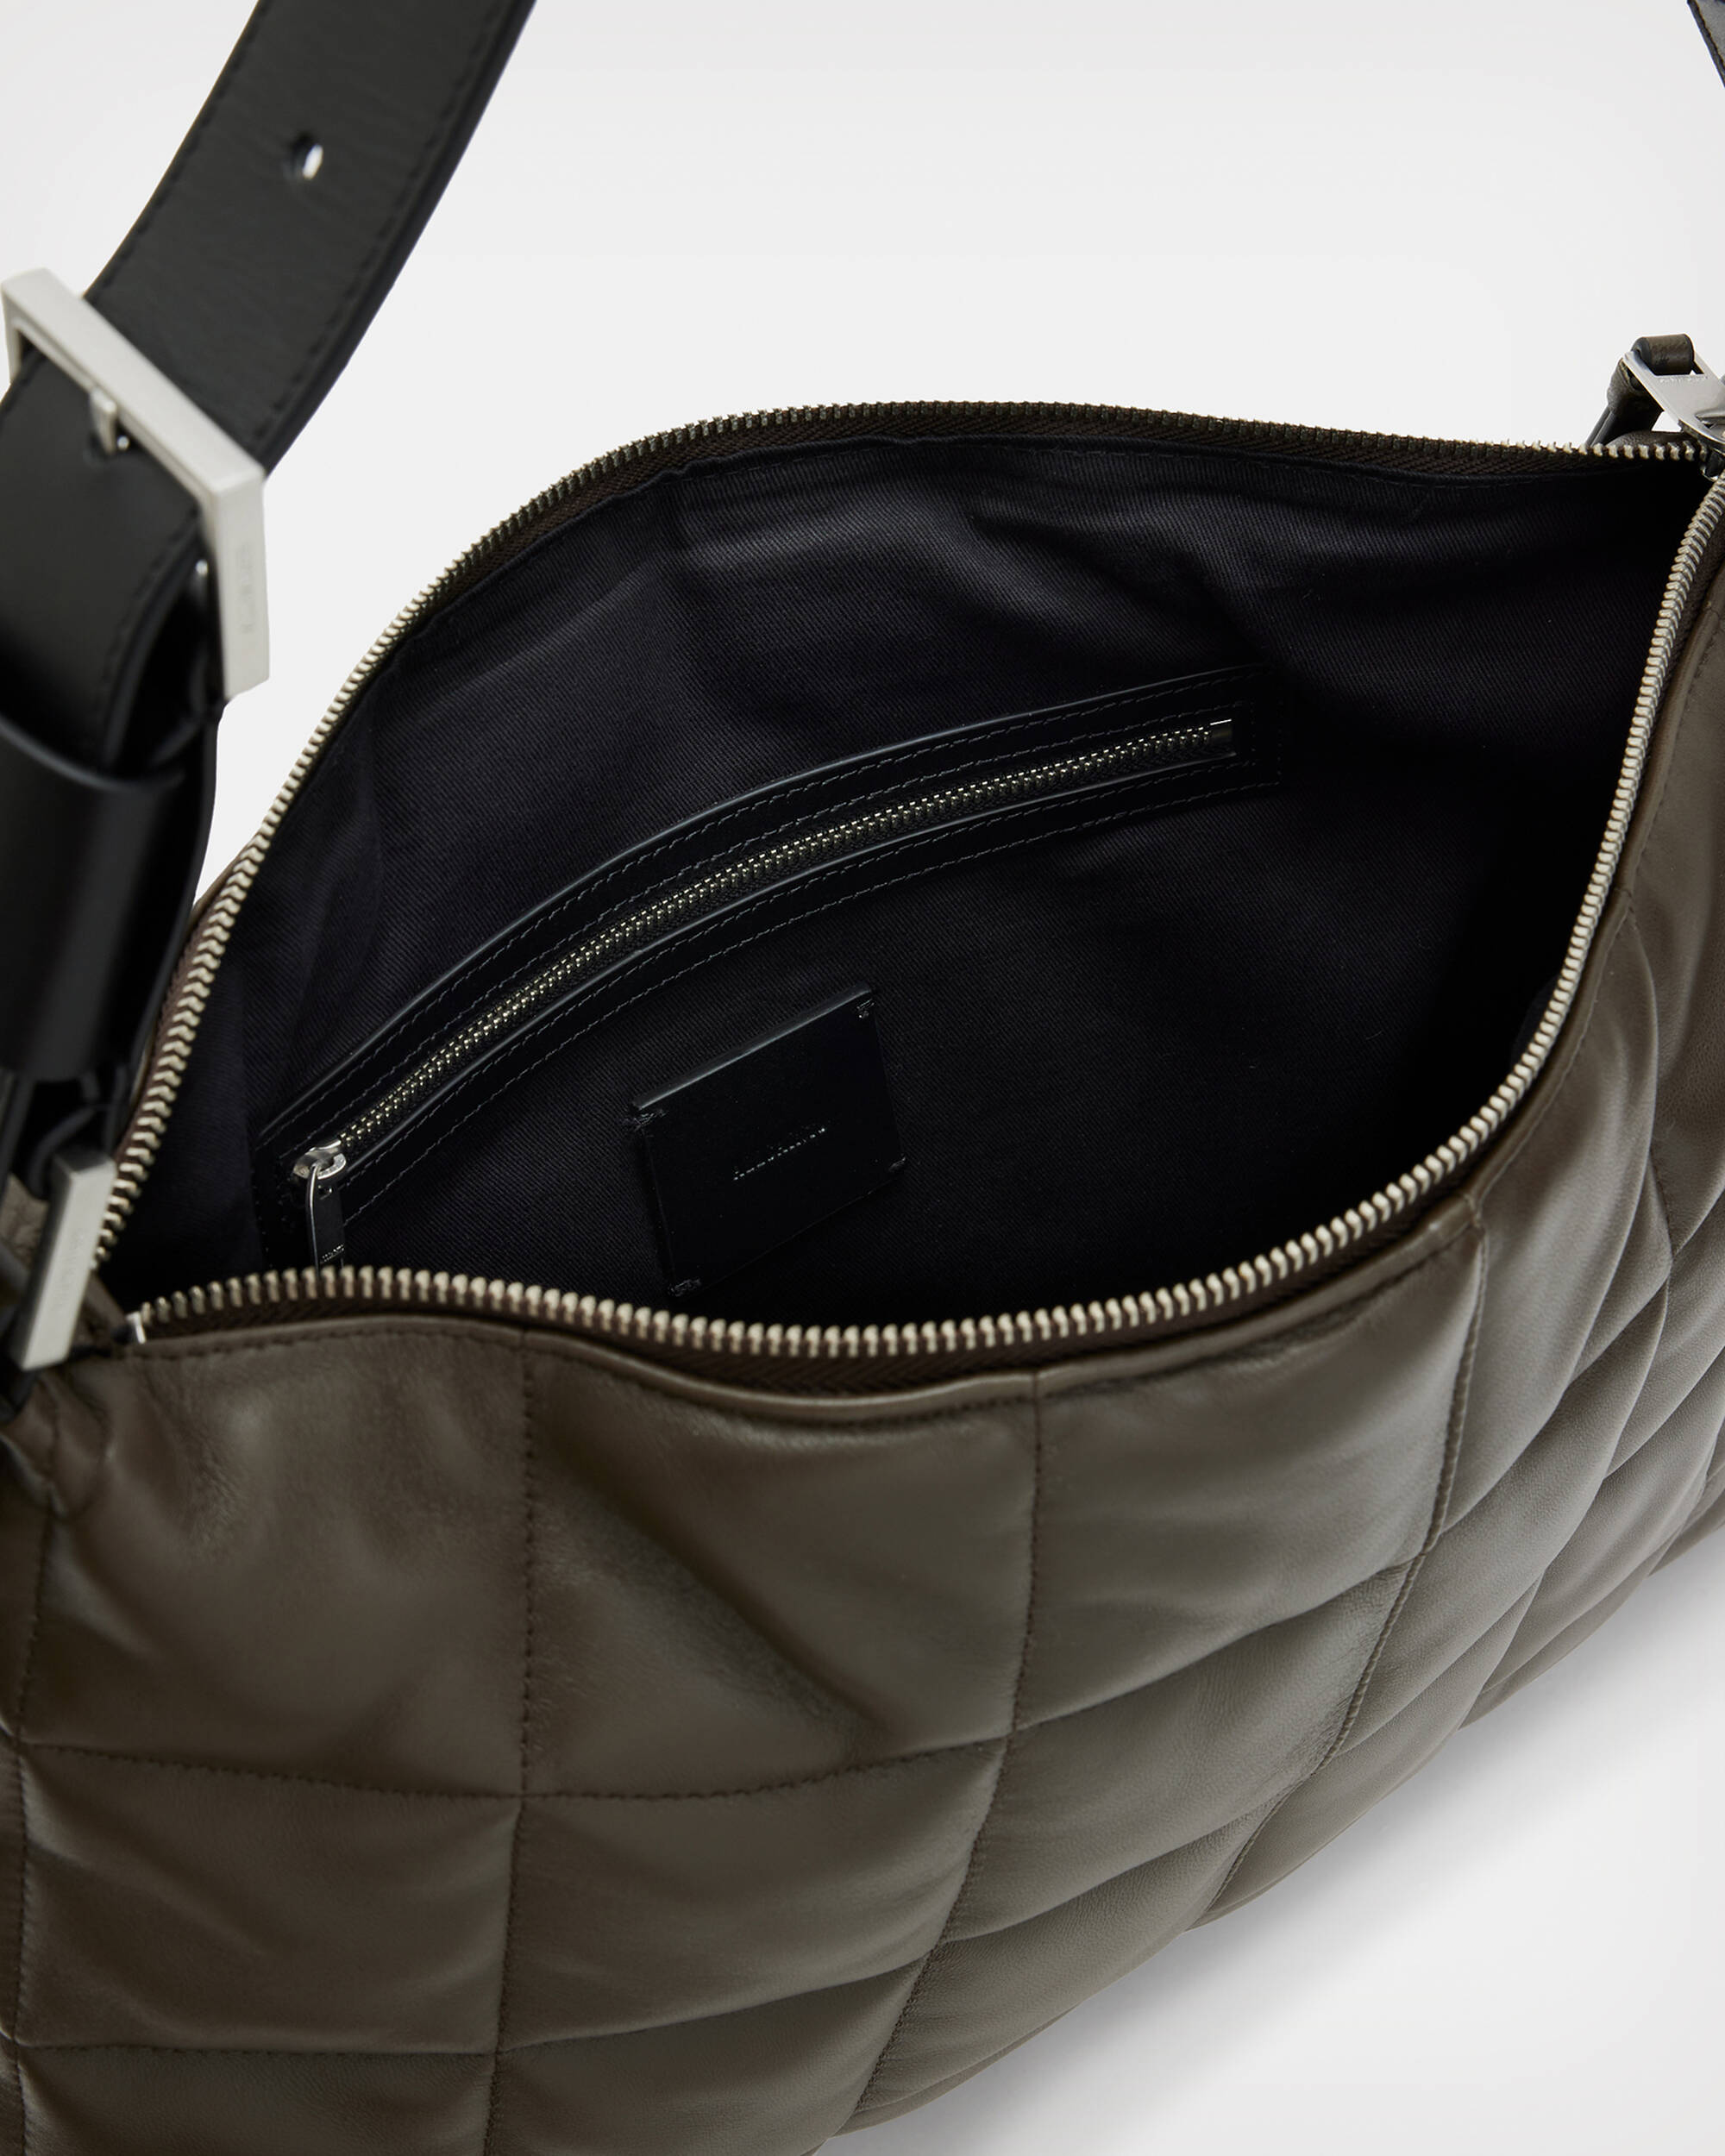 Edbury Leather Quilted Shoulder Bag Olive | ALLSAINTS US